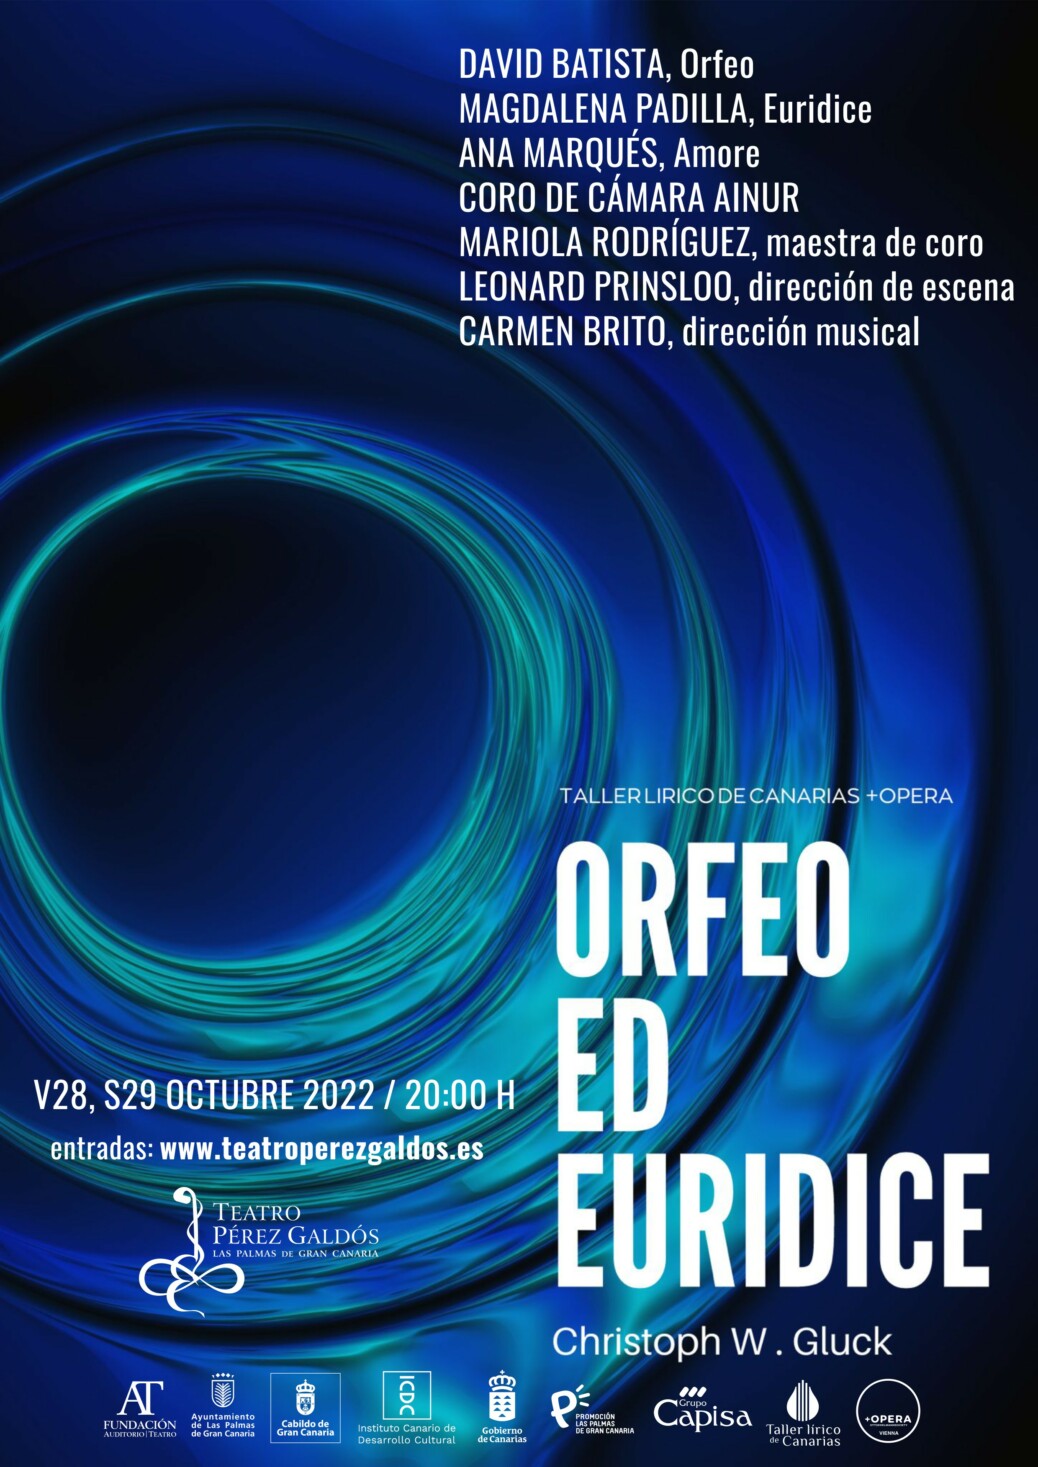 Ópera Orfeo ed Euridice